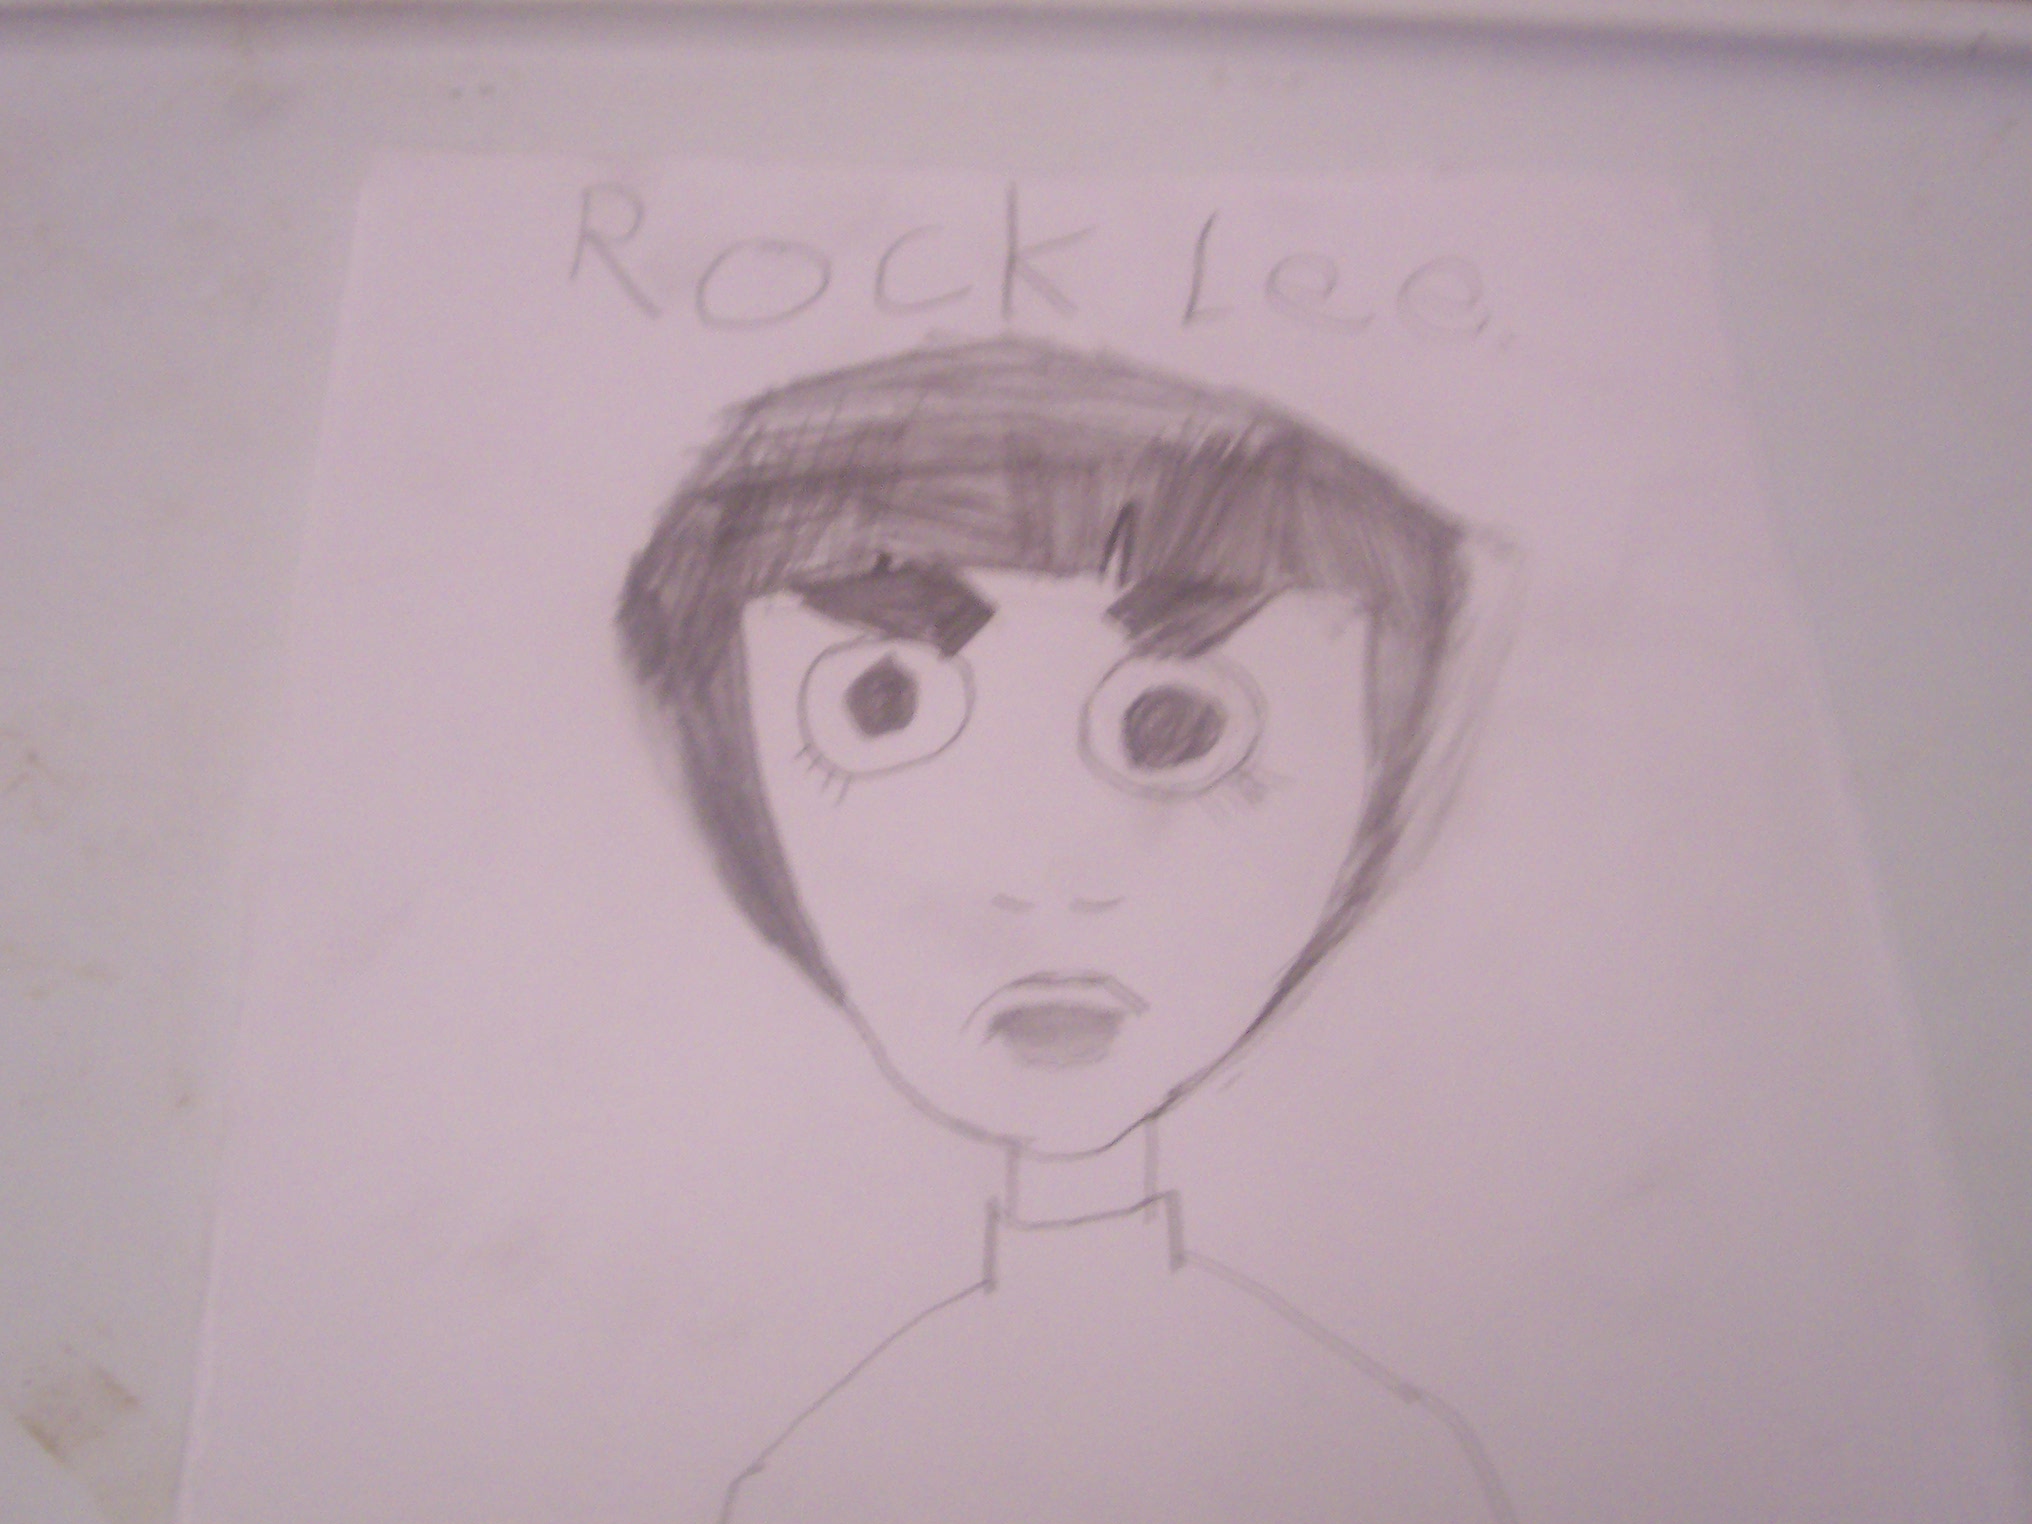 rock lee by Yusuke121